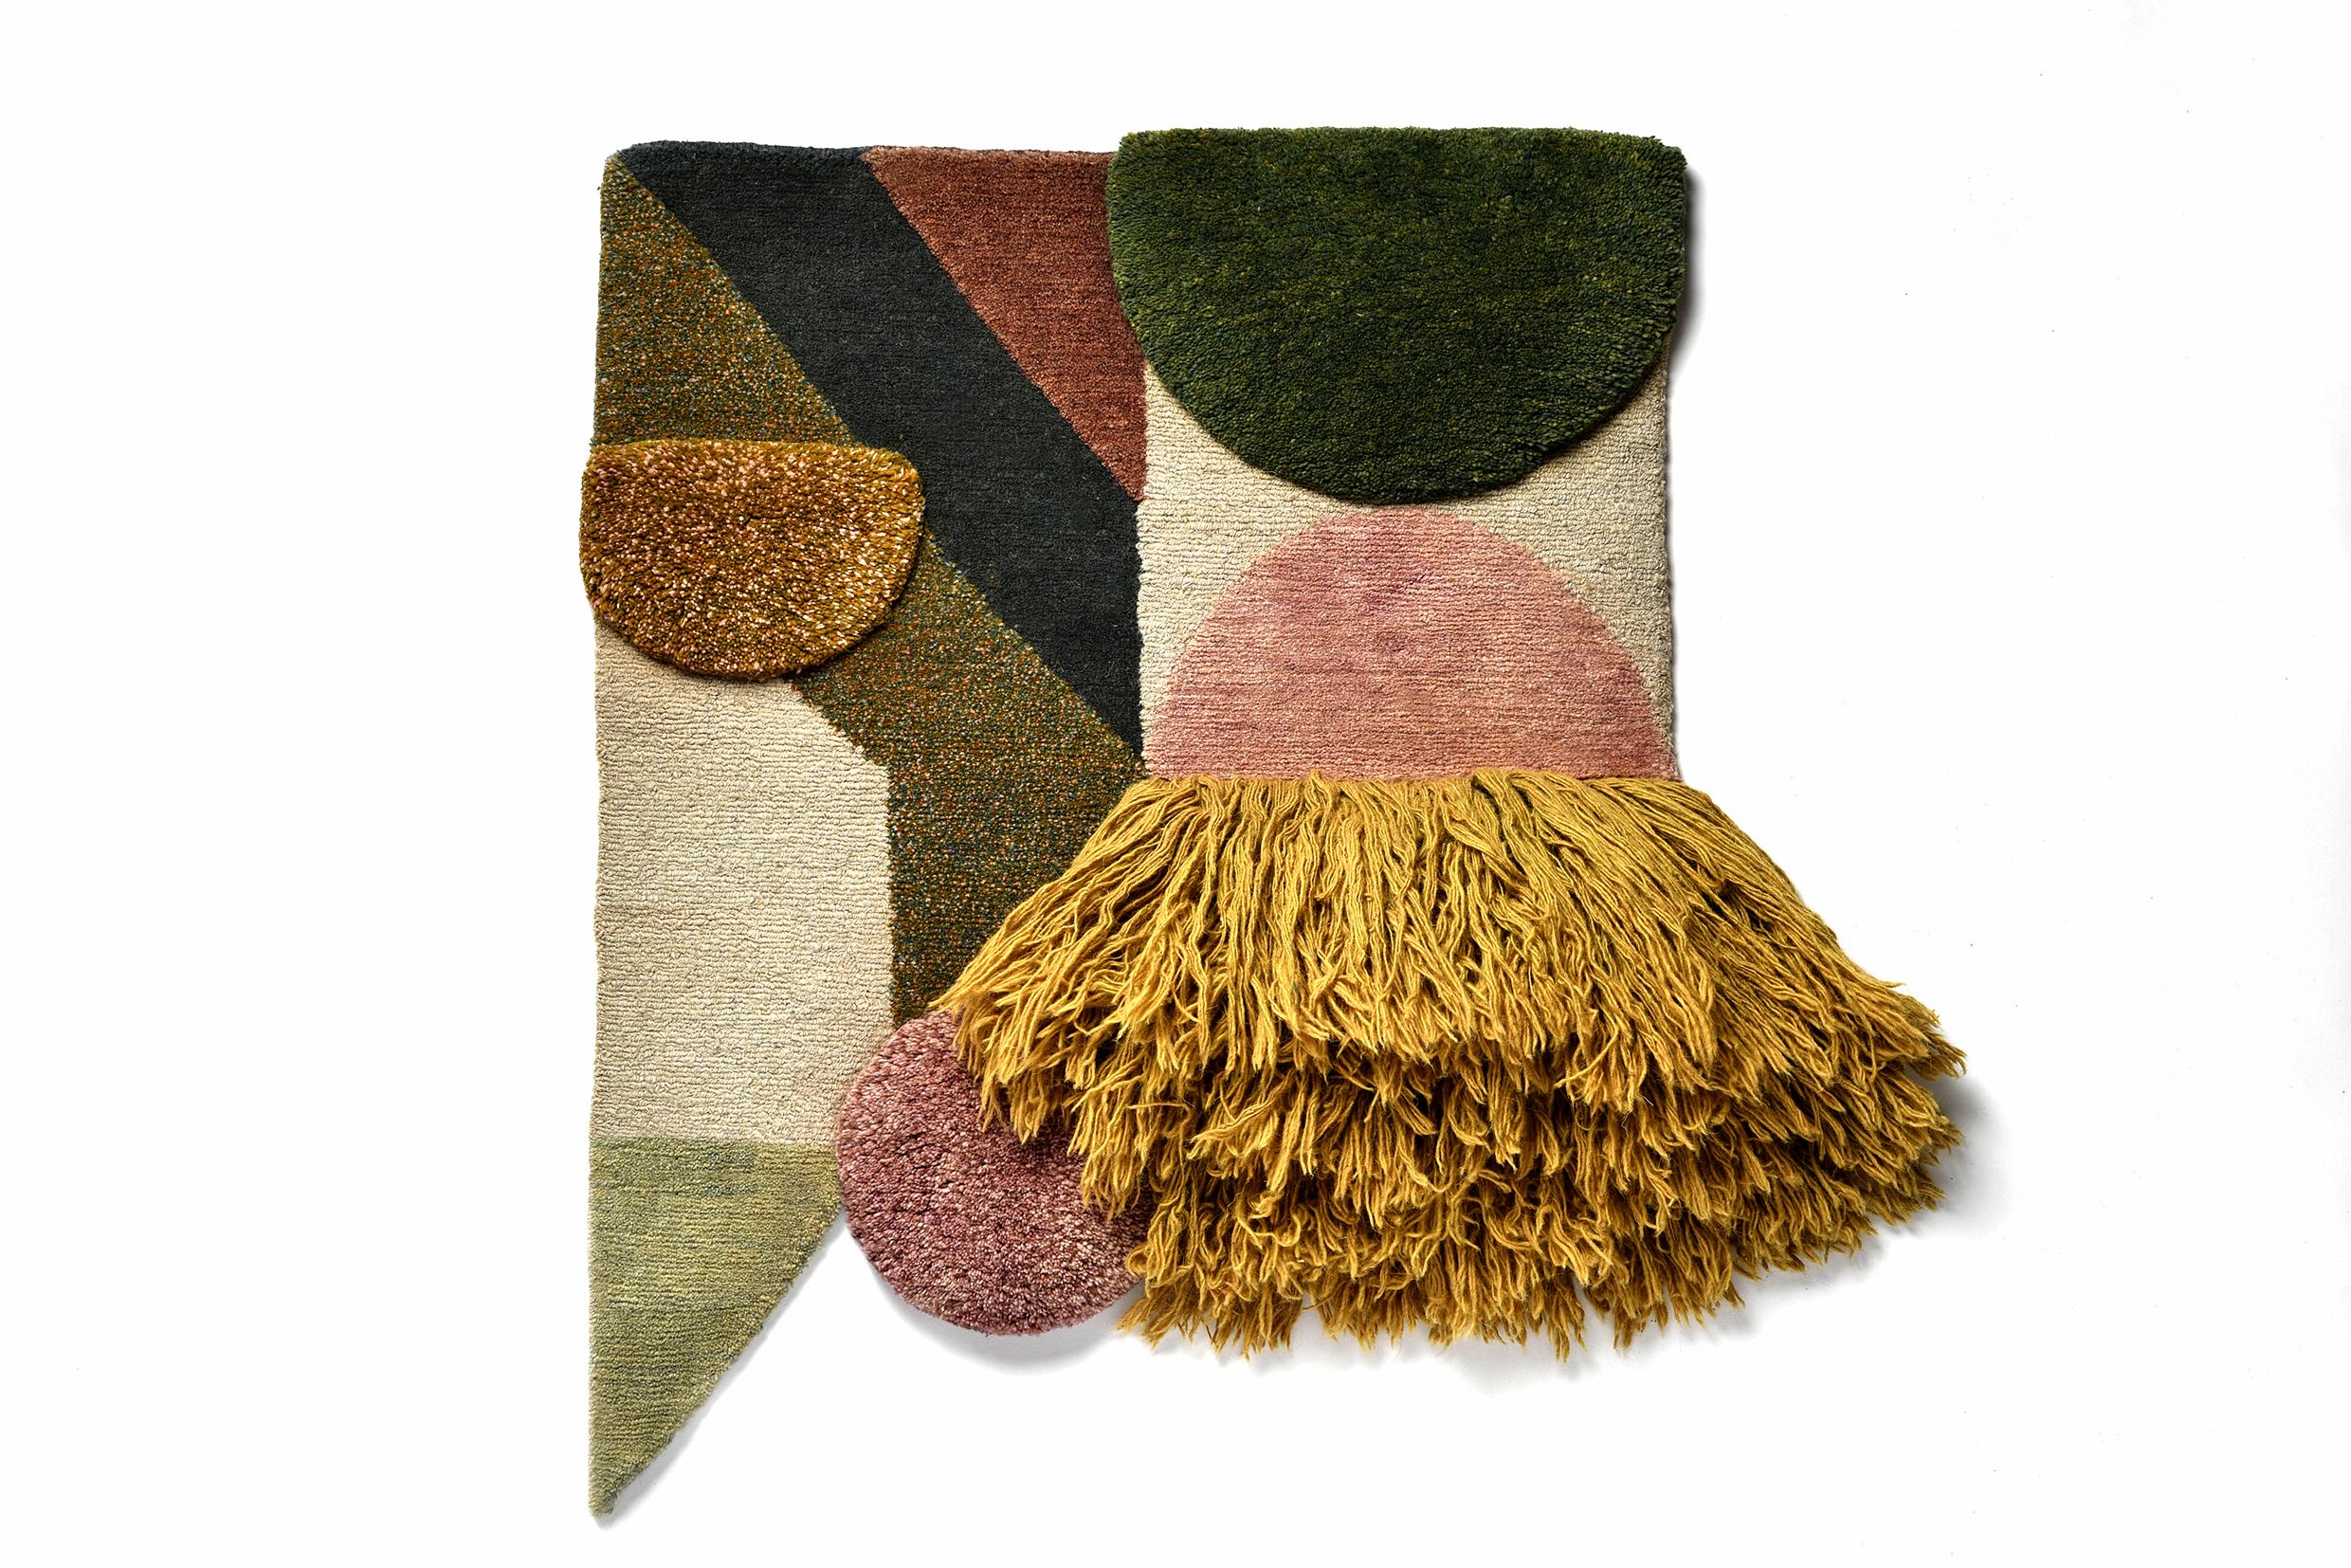 Nr. 219 handgeknüpftes Textilposter von Lyk Carpet
Hommage an die Bauhausfrauen
Abmessungen: B 55 x L 69 cm.
MATERIALIEN: 100% tibetische Hochlandwolle, handgekämmte und handgesponnene Schurwolle, natürliche pflanzengefärbte Wolle, 100 Knoten pro